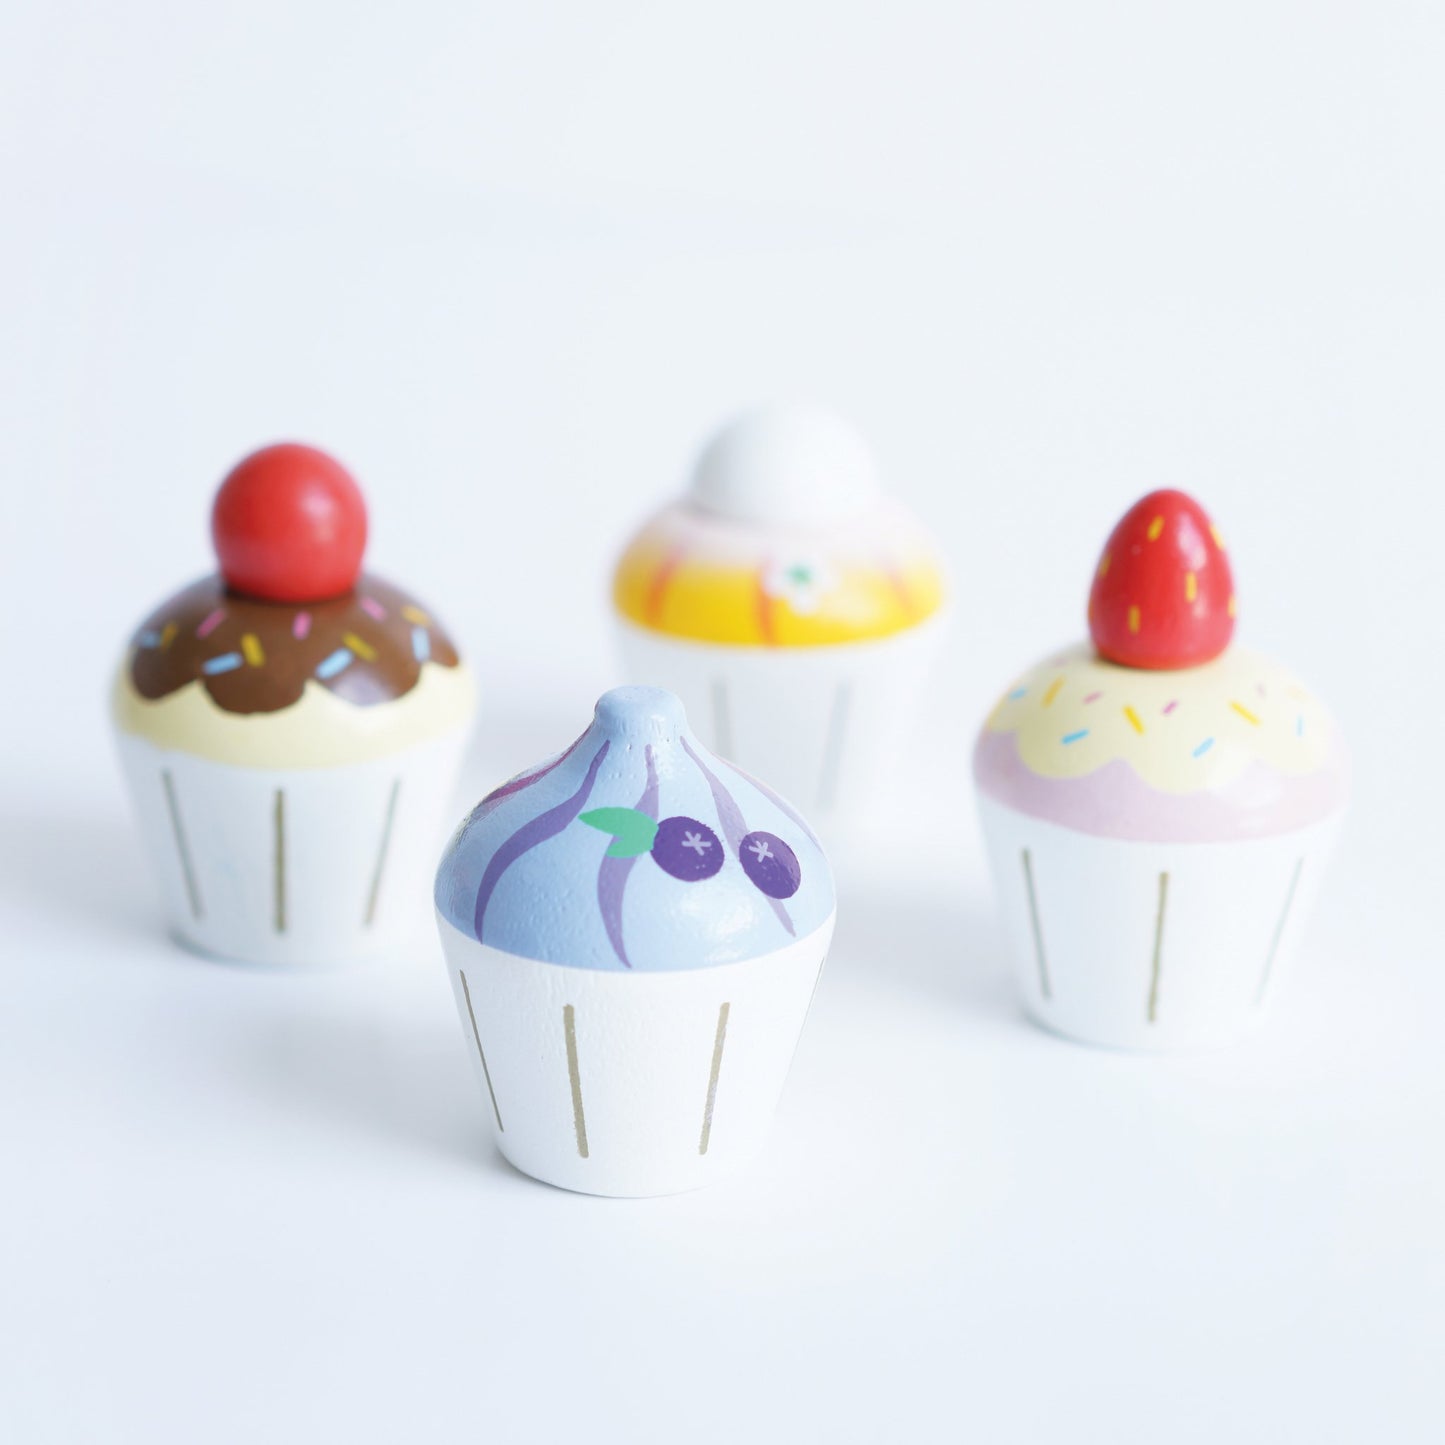 Le Toy Van cupcake set of 4